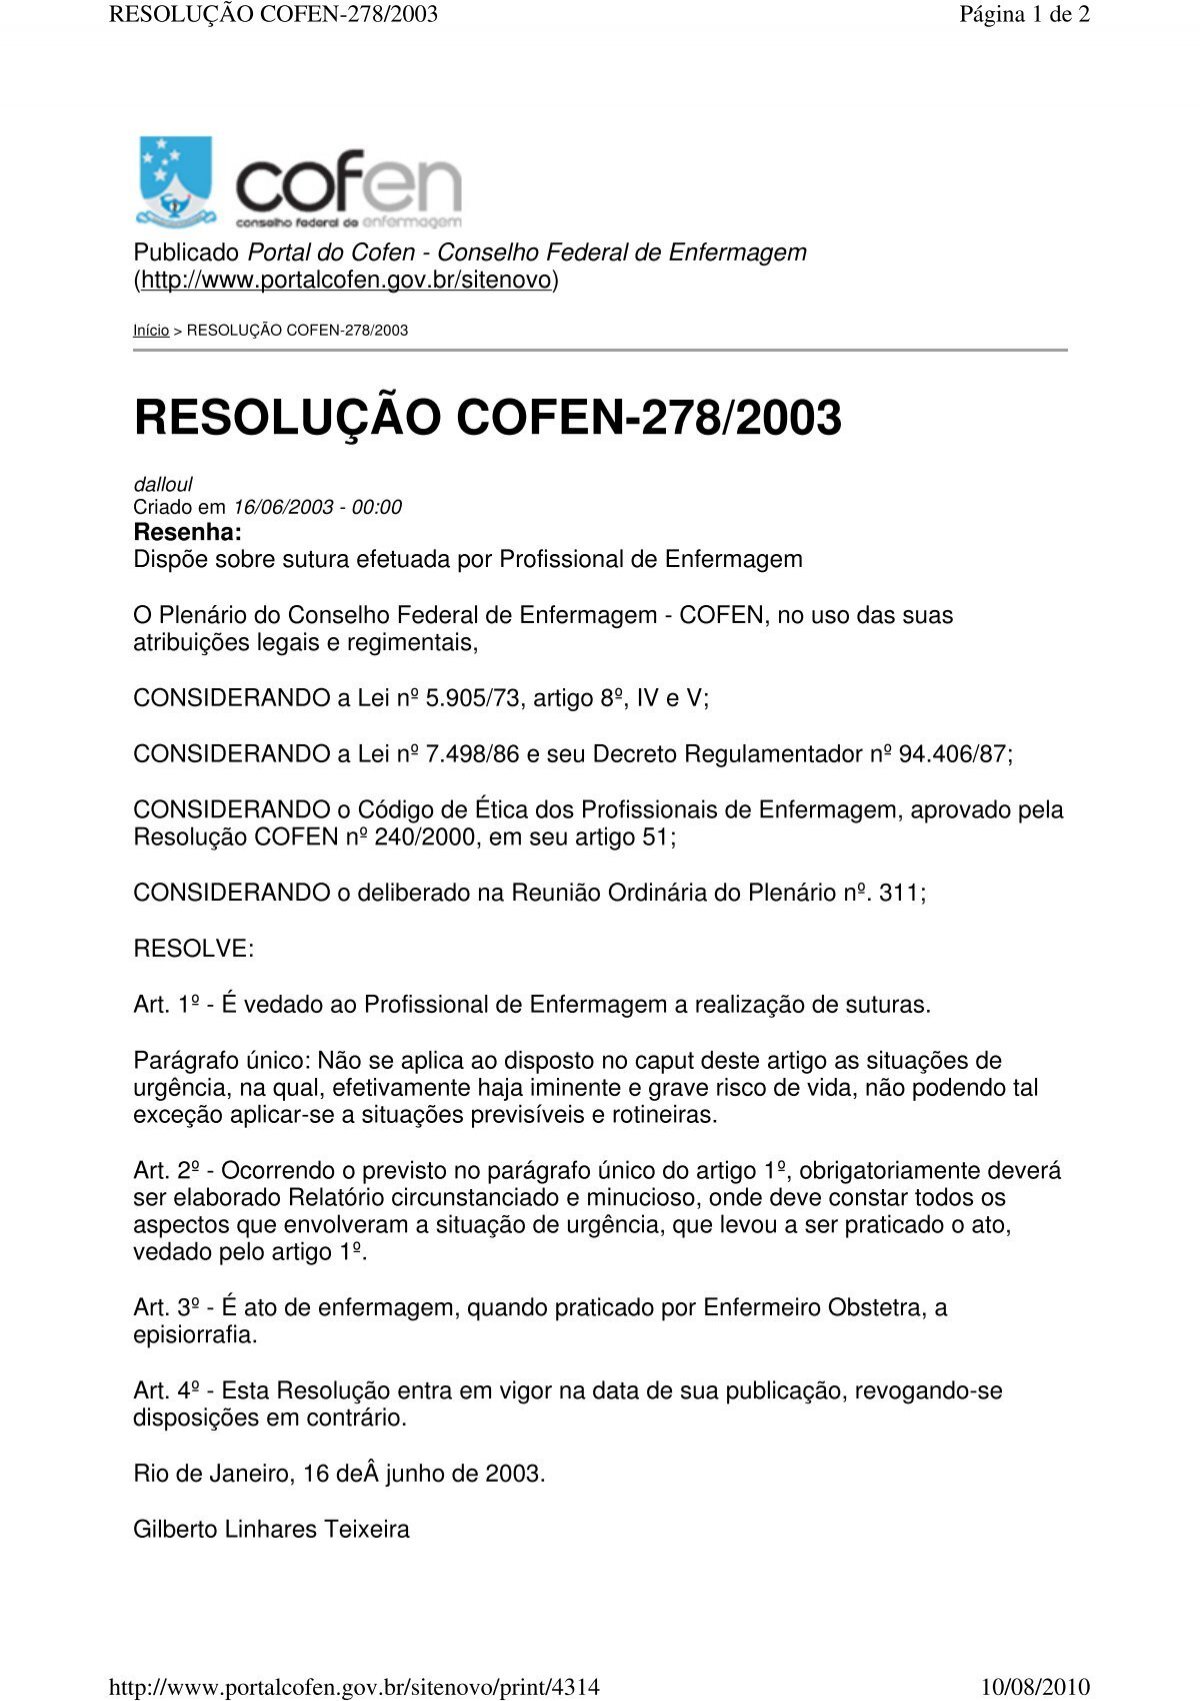 Decreto 9.847 - GCM Ipatinga - Legislação especial - Prof. Fraga